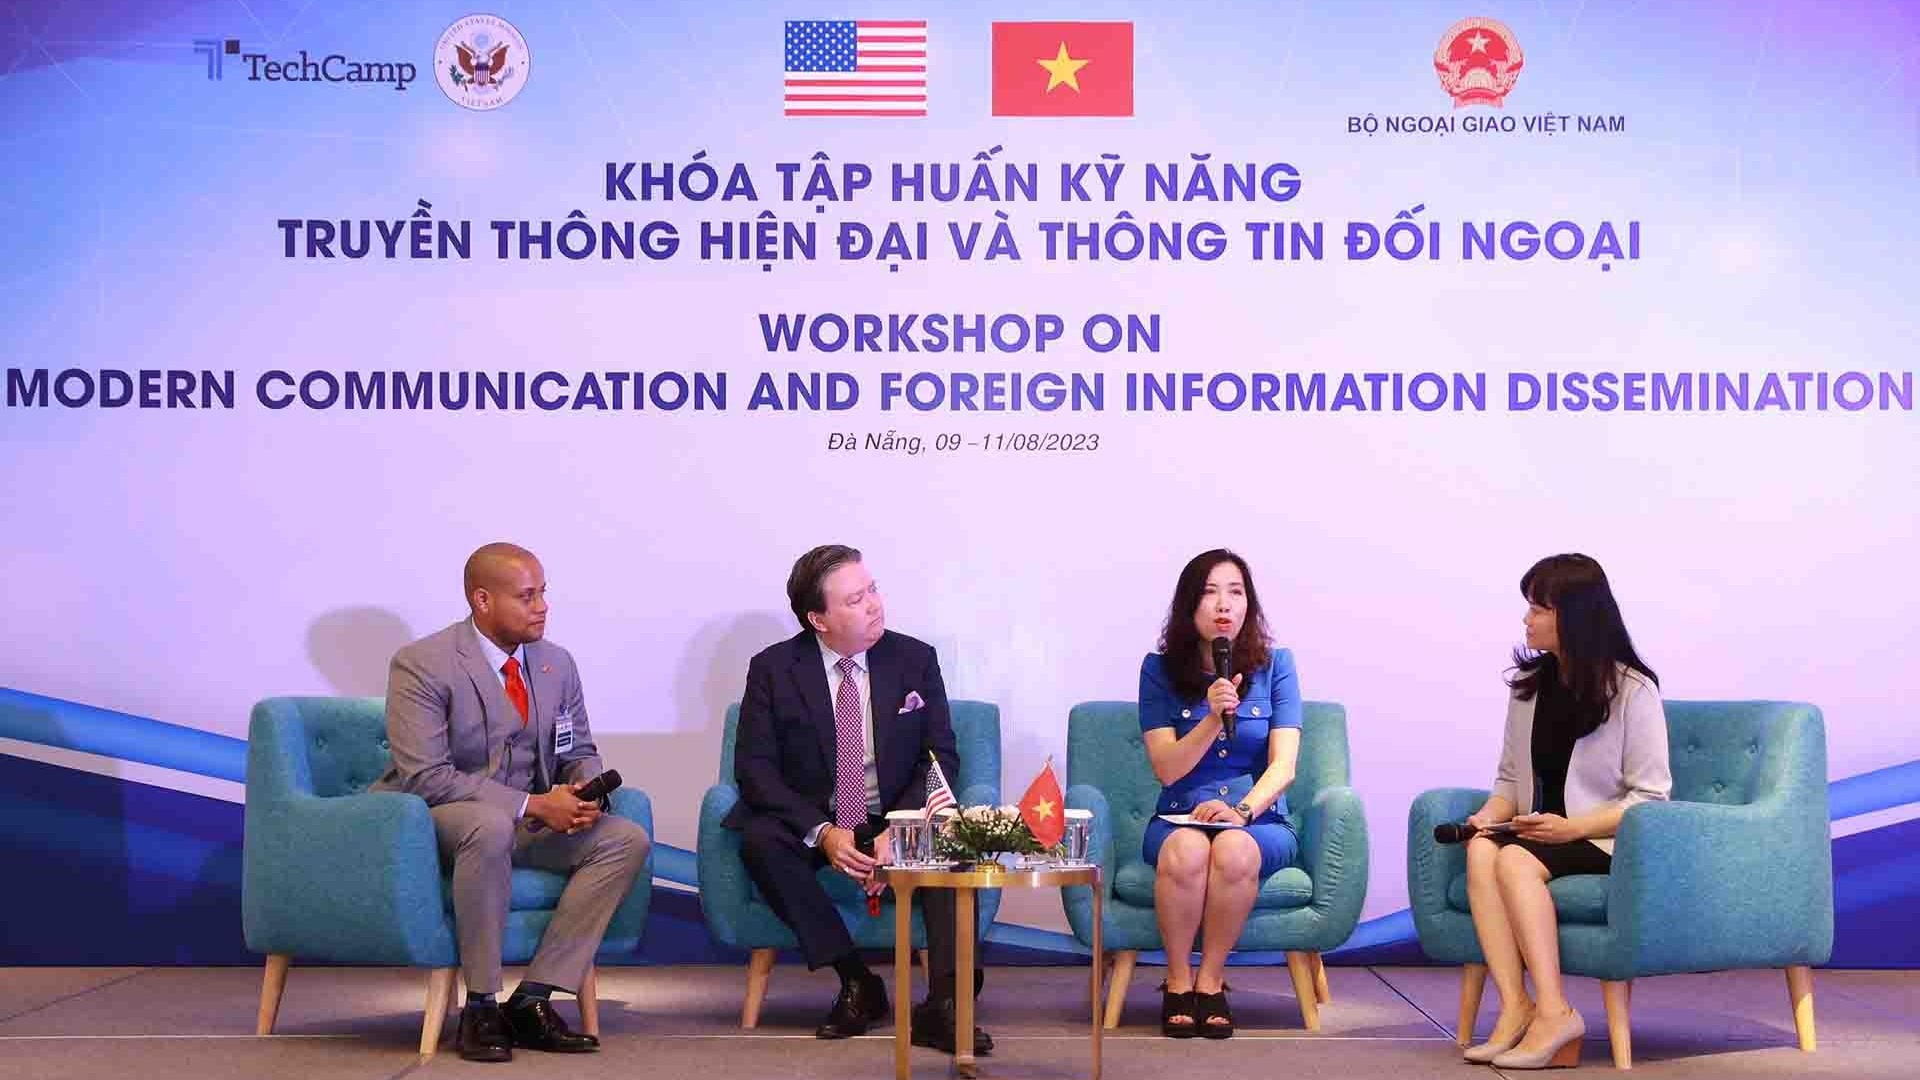 Bộ Ngoại giao phối hợp với Đại sứ quán Hoa Kỳ tổ chức khoá tập huấn kỹ năng truyền thông hiện đại và thông tin đối ngoại